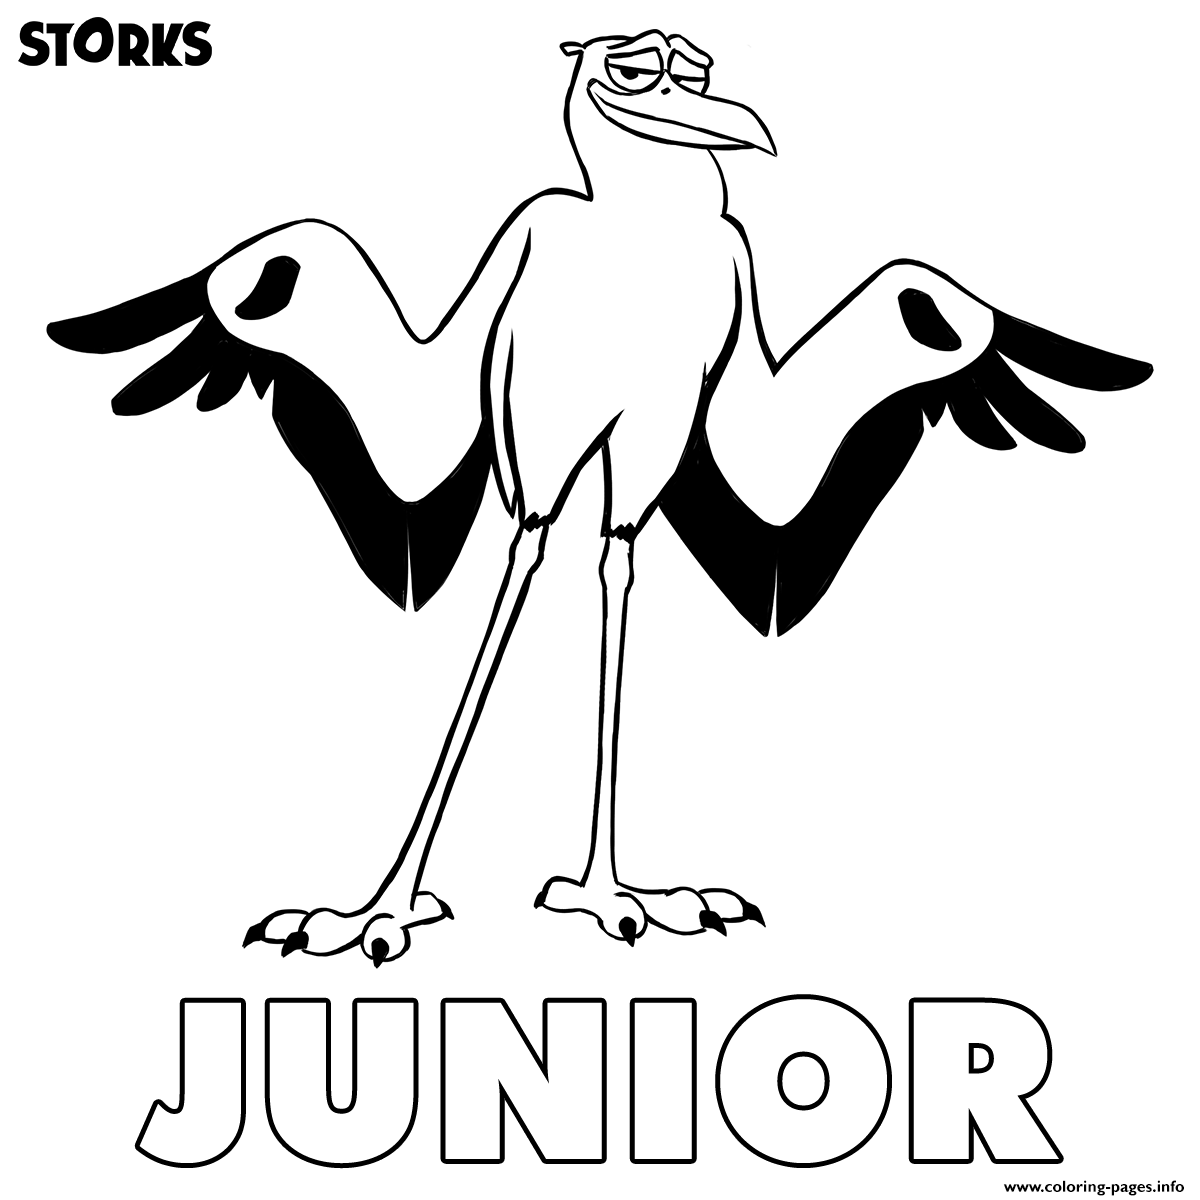 Storks Junior coloring